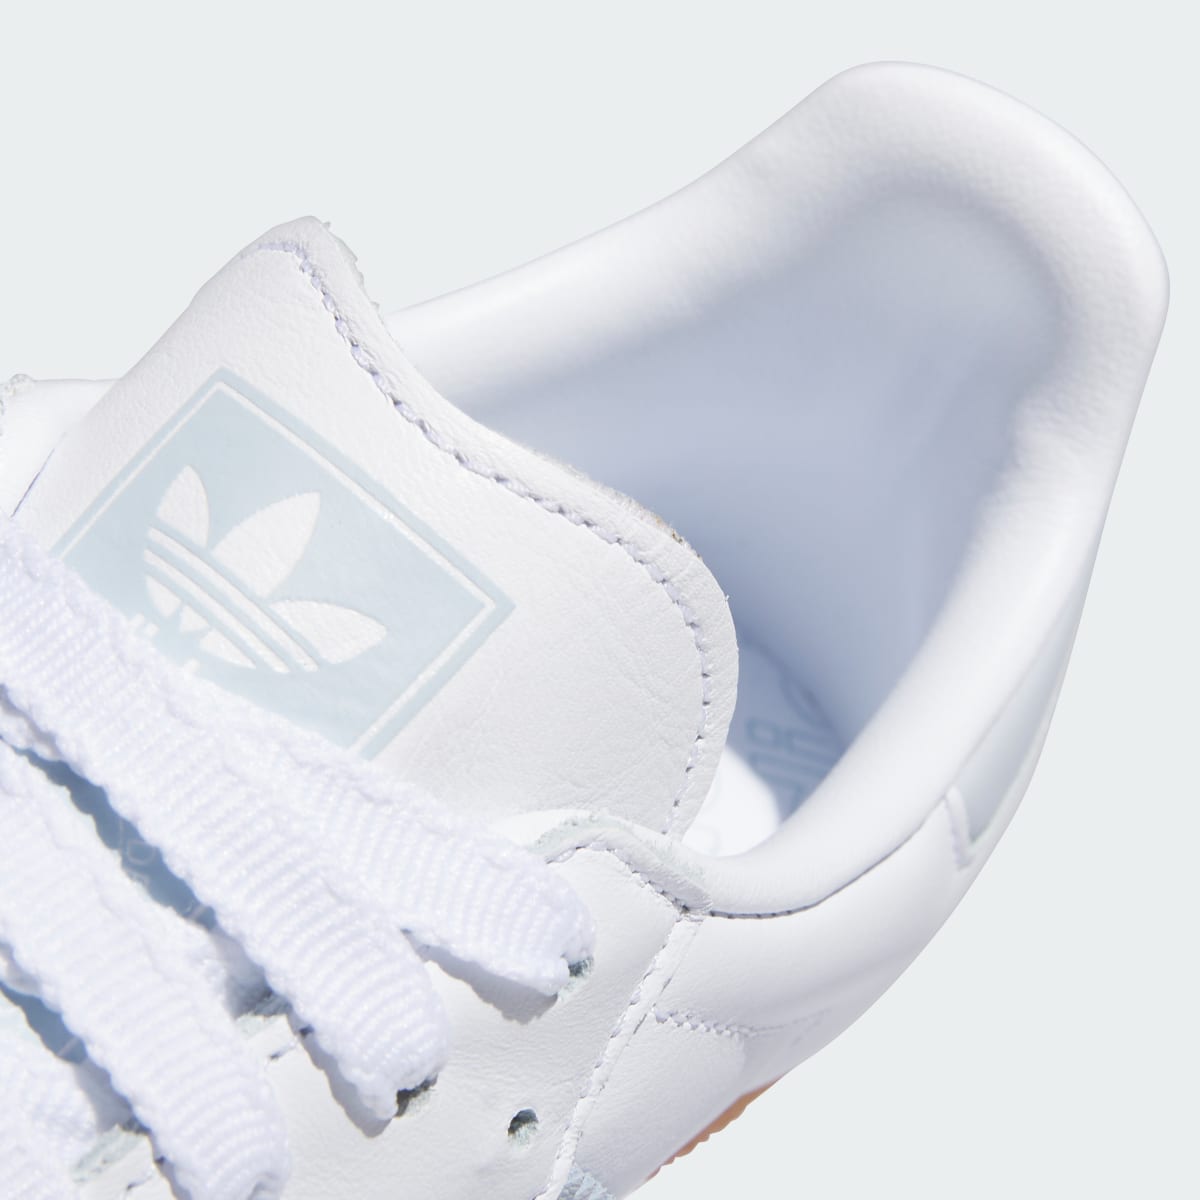 Adidas Samba OG Ayakkabı. 3